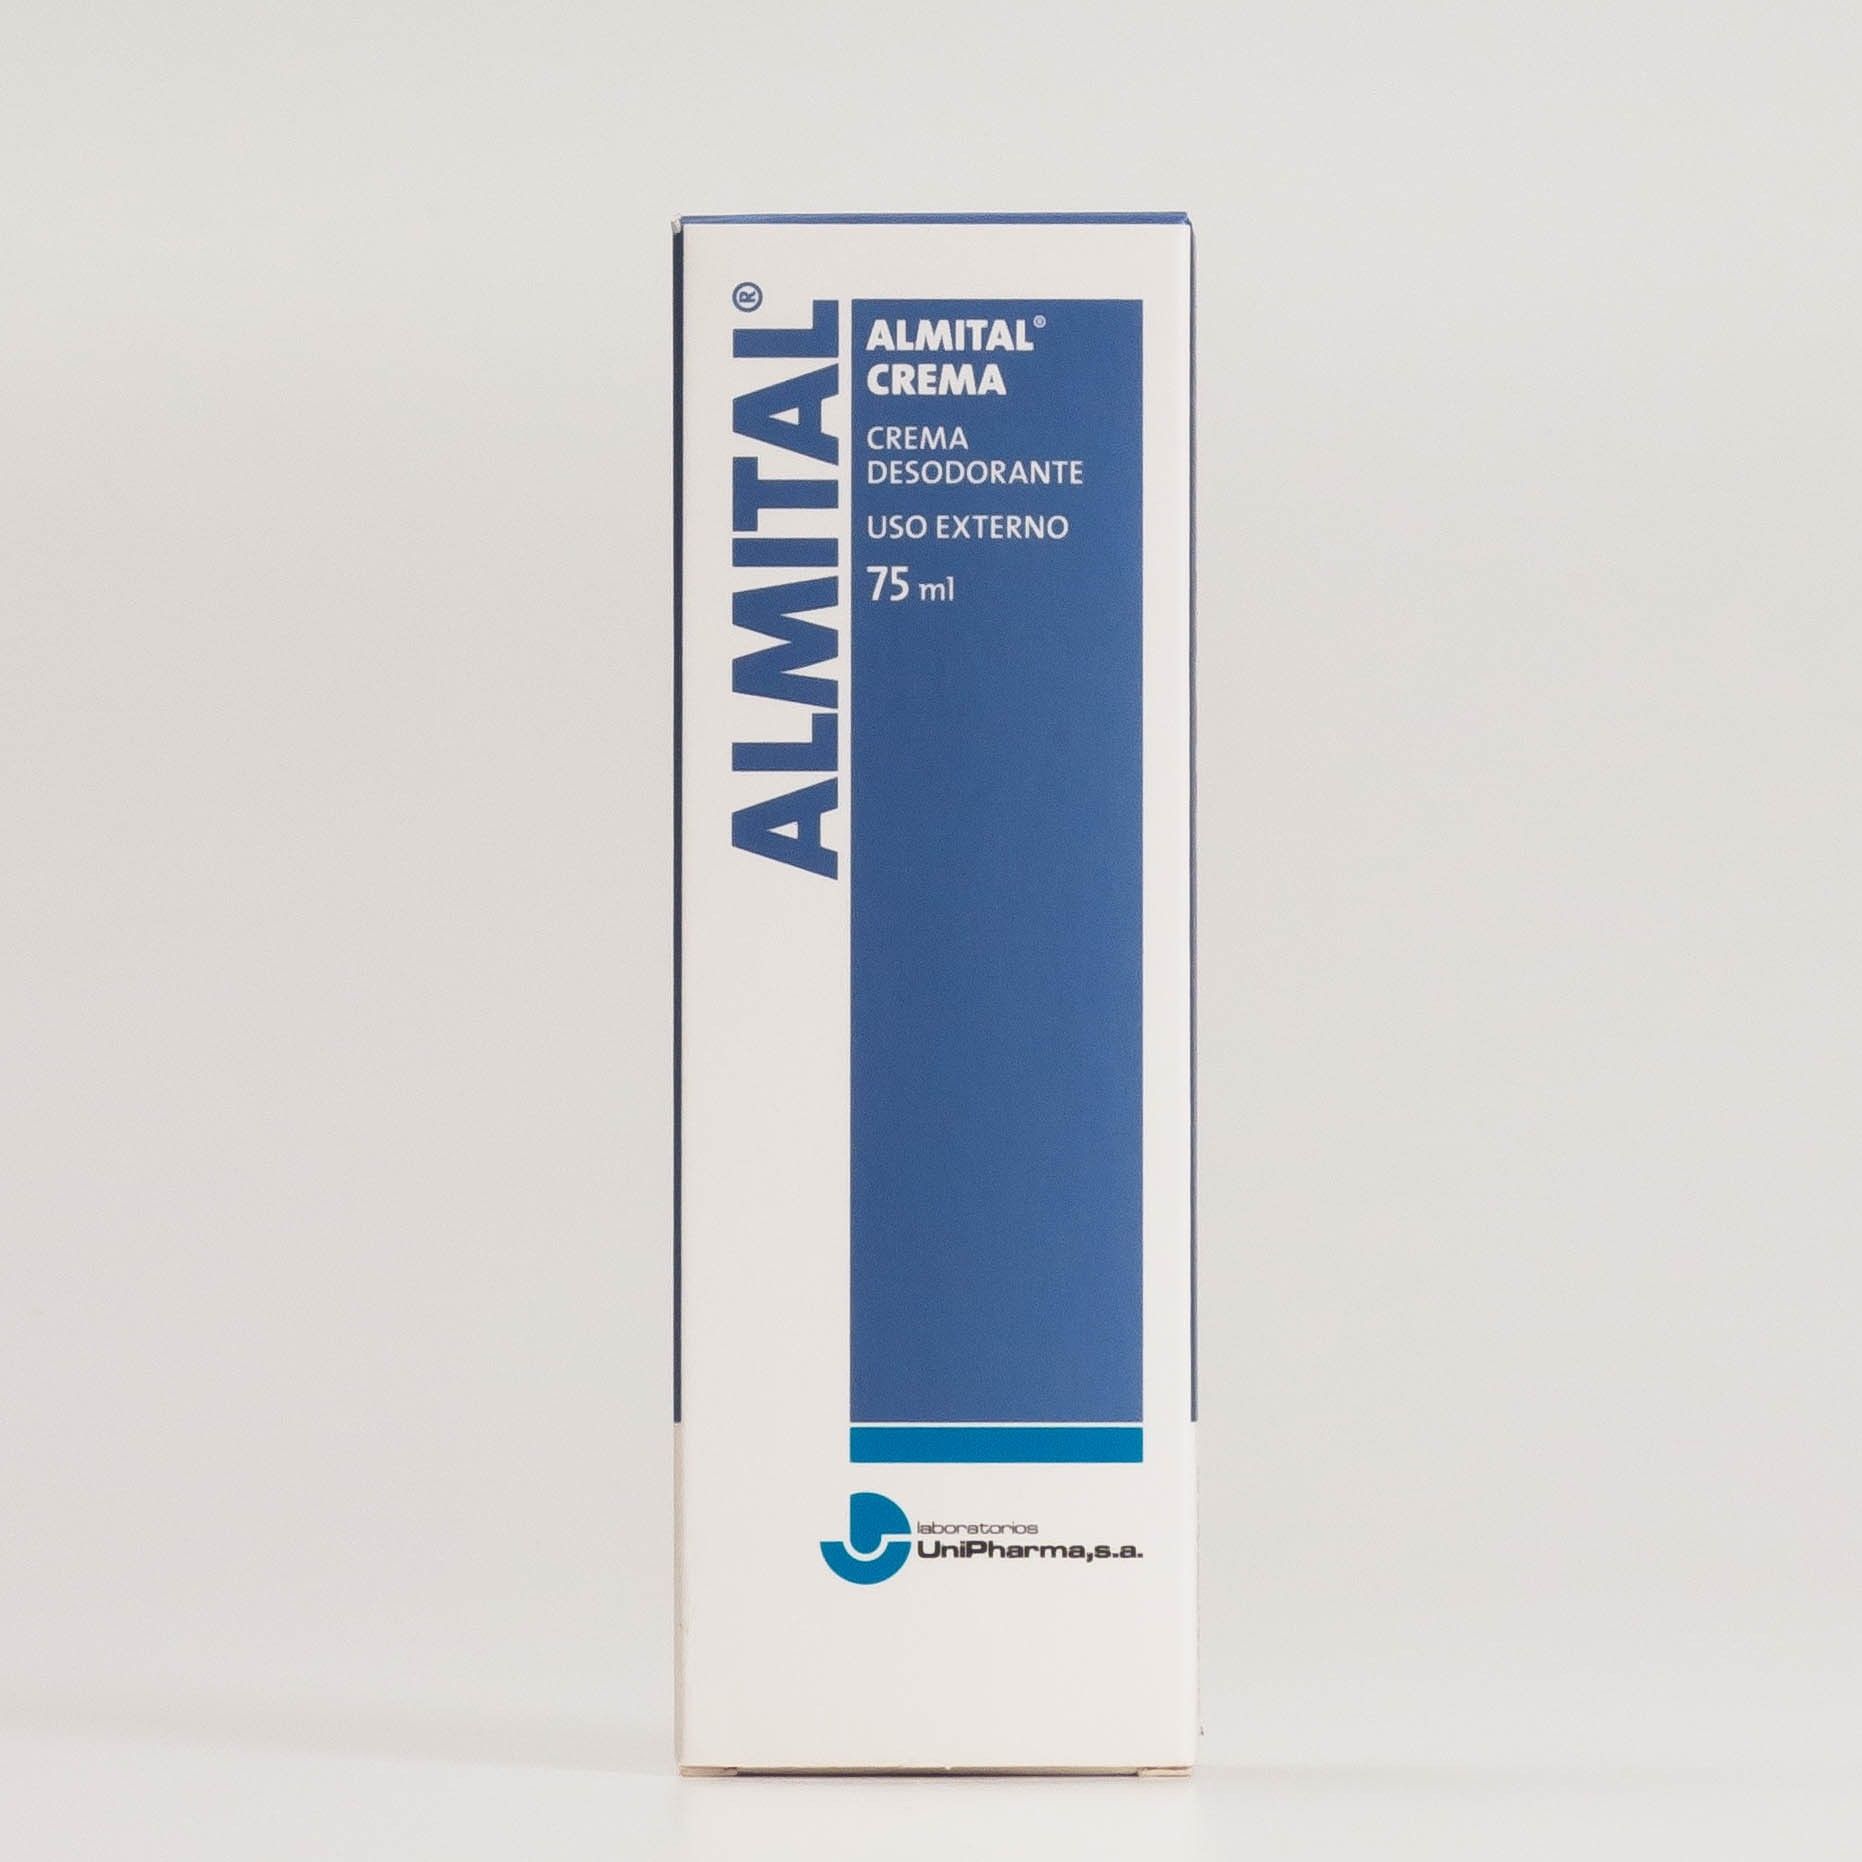 Almital Crema Desodorante. 75ml